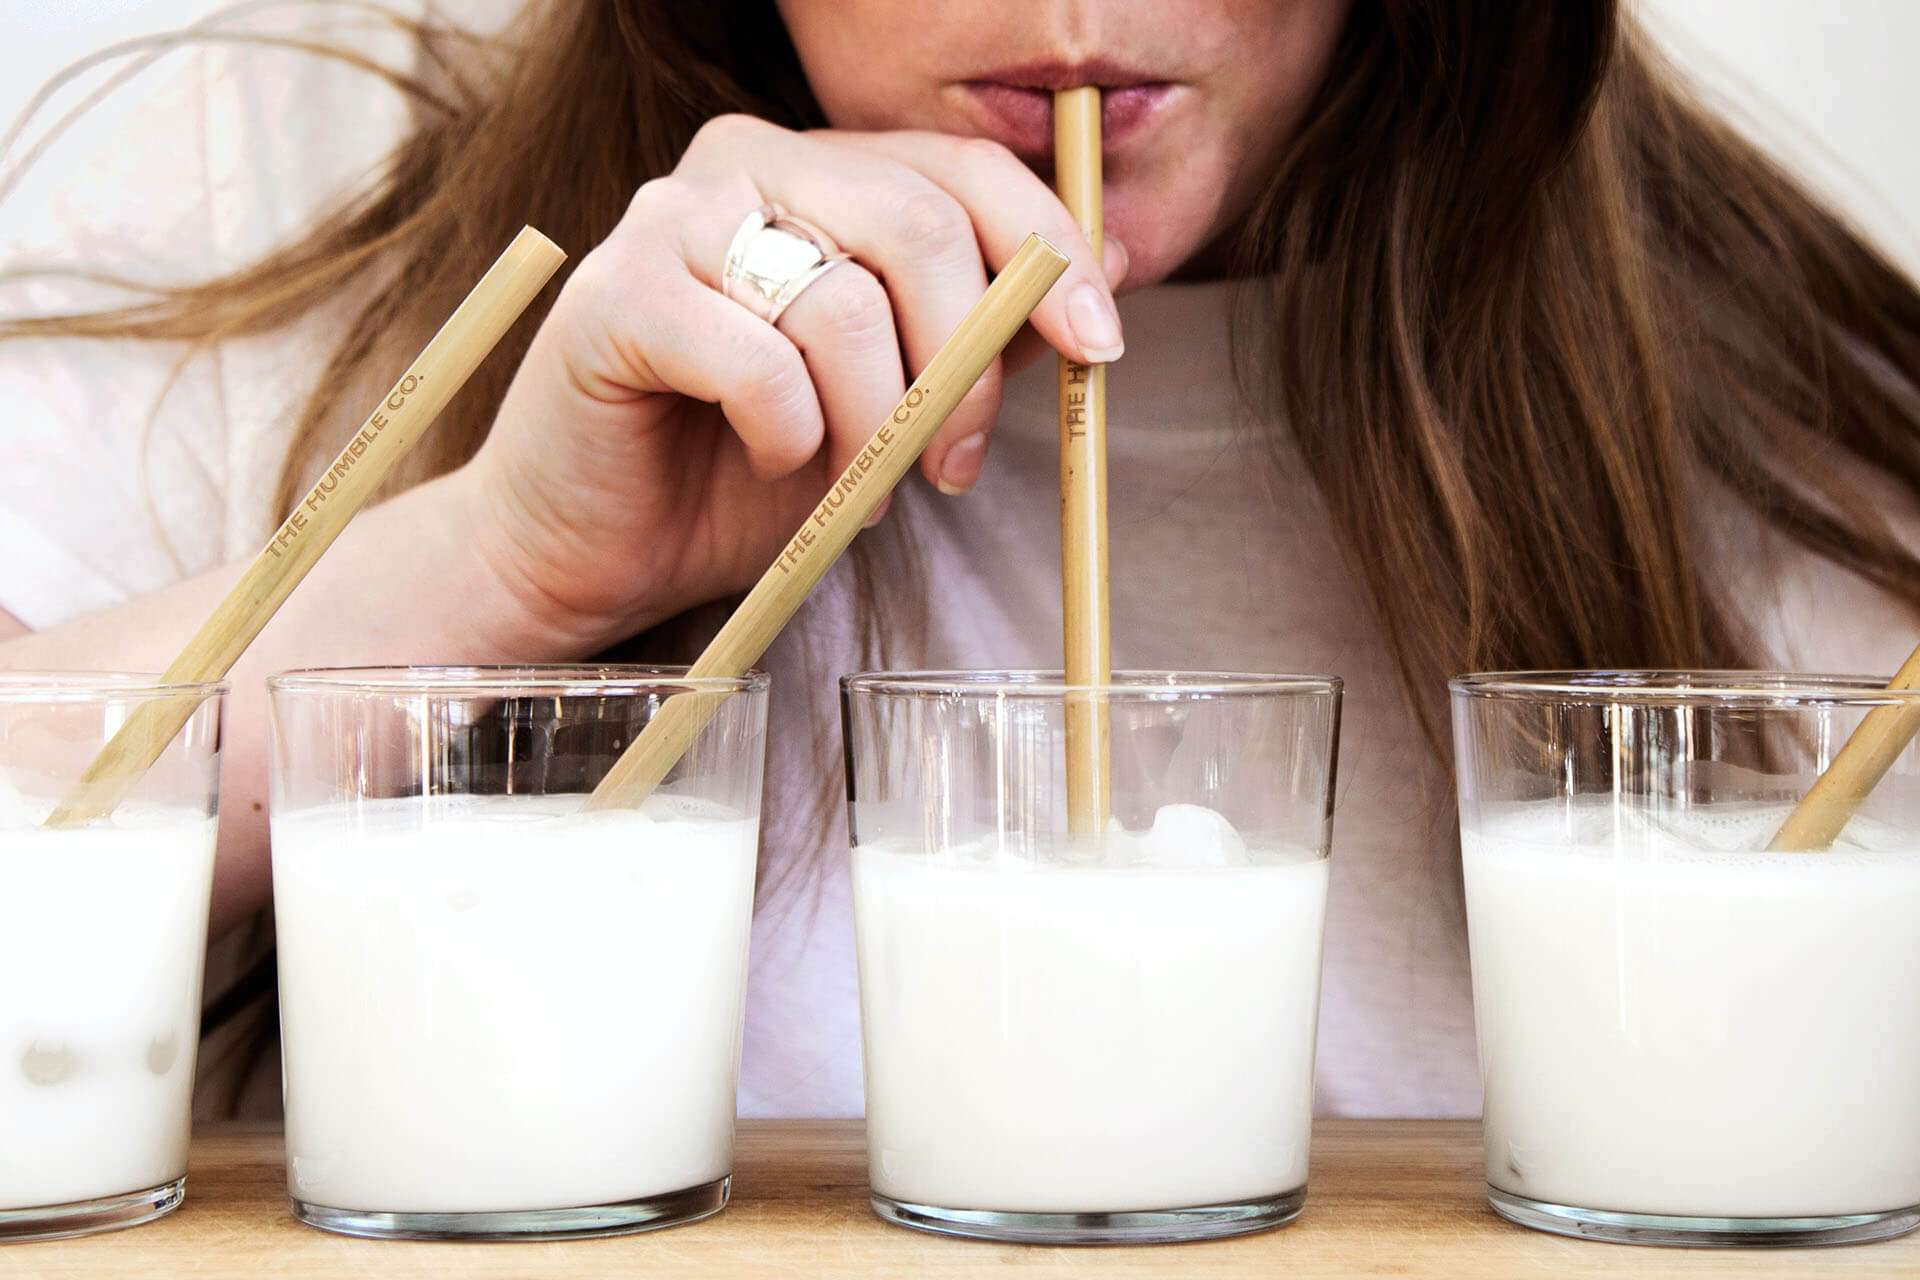 La otra cara de la leche|La otra cara de la leche|Lo malo de los lácteos son las proteínas, ¿o no?